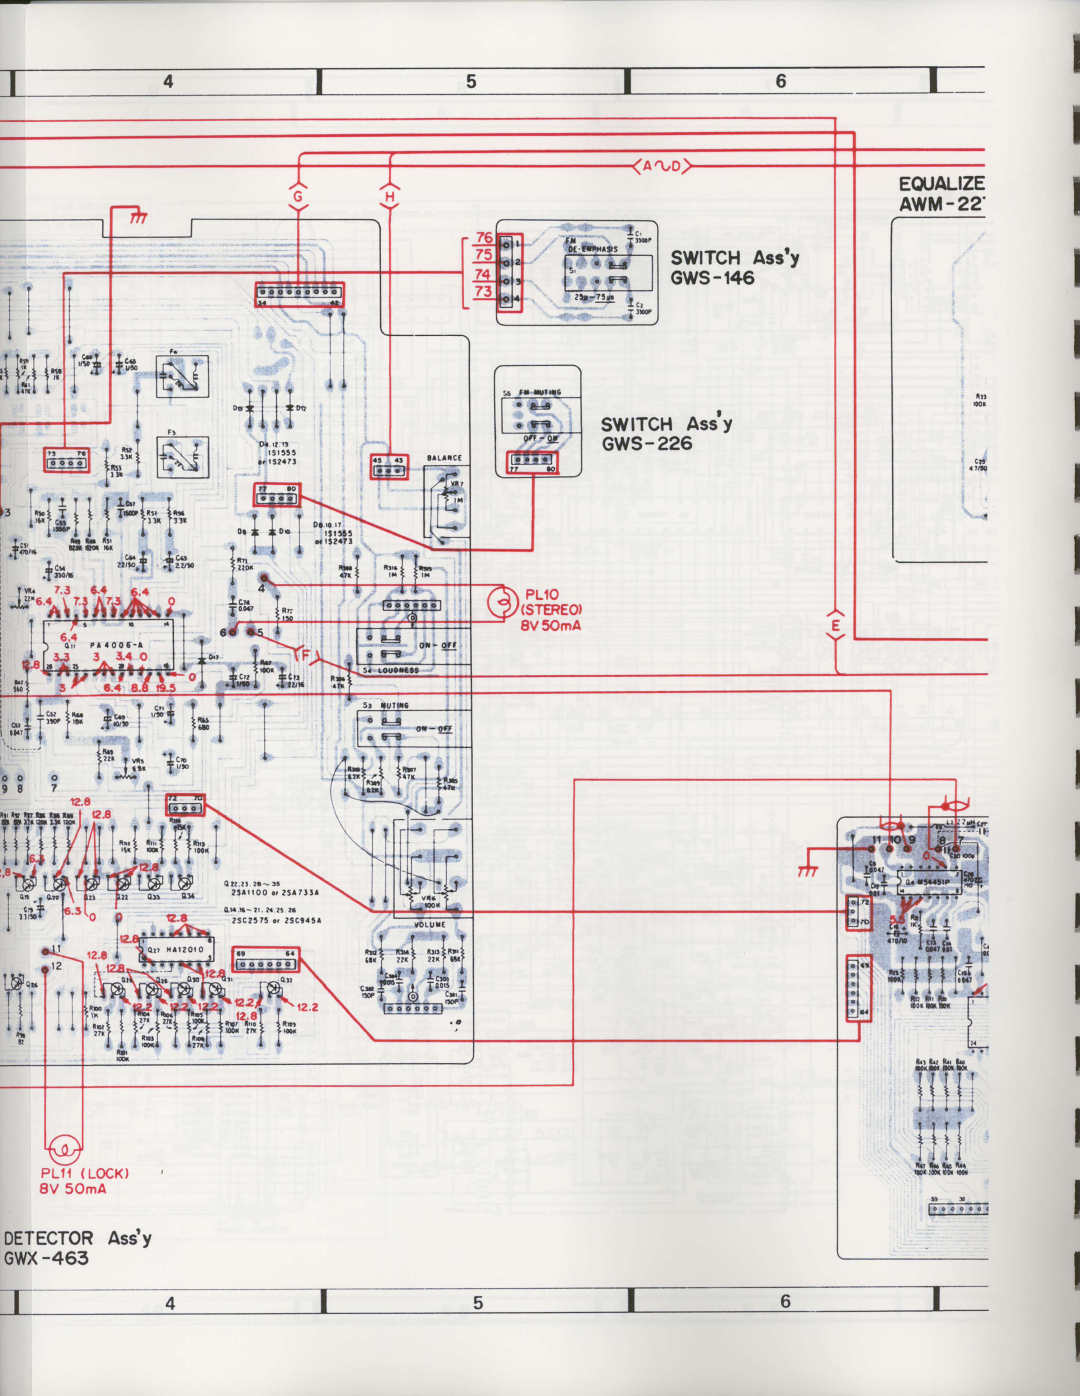 Pioneer SX-3800 manual i.ls, tn, t + +, d16l, a,rr, ? t ?, $ll1rl, ilIl, EOUALIZE AWM SWITCHAssy GWS-146 SWITCHAssy GWS-226 